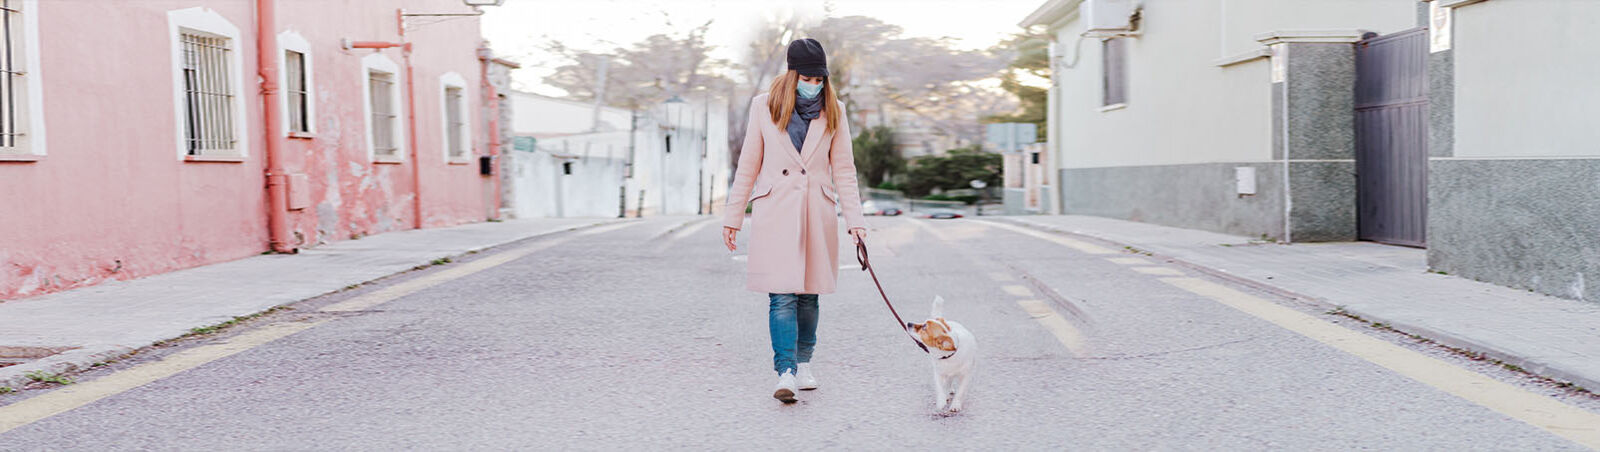 Hund und Halterin mit weißer Atemschutzmaske spazieren durch die Stadt.